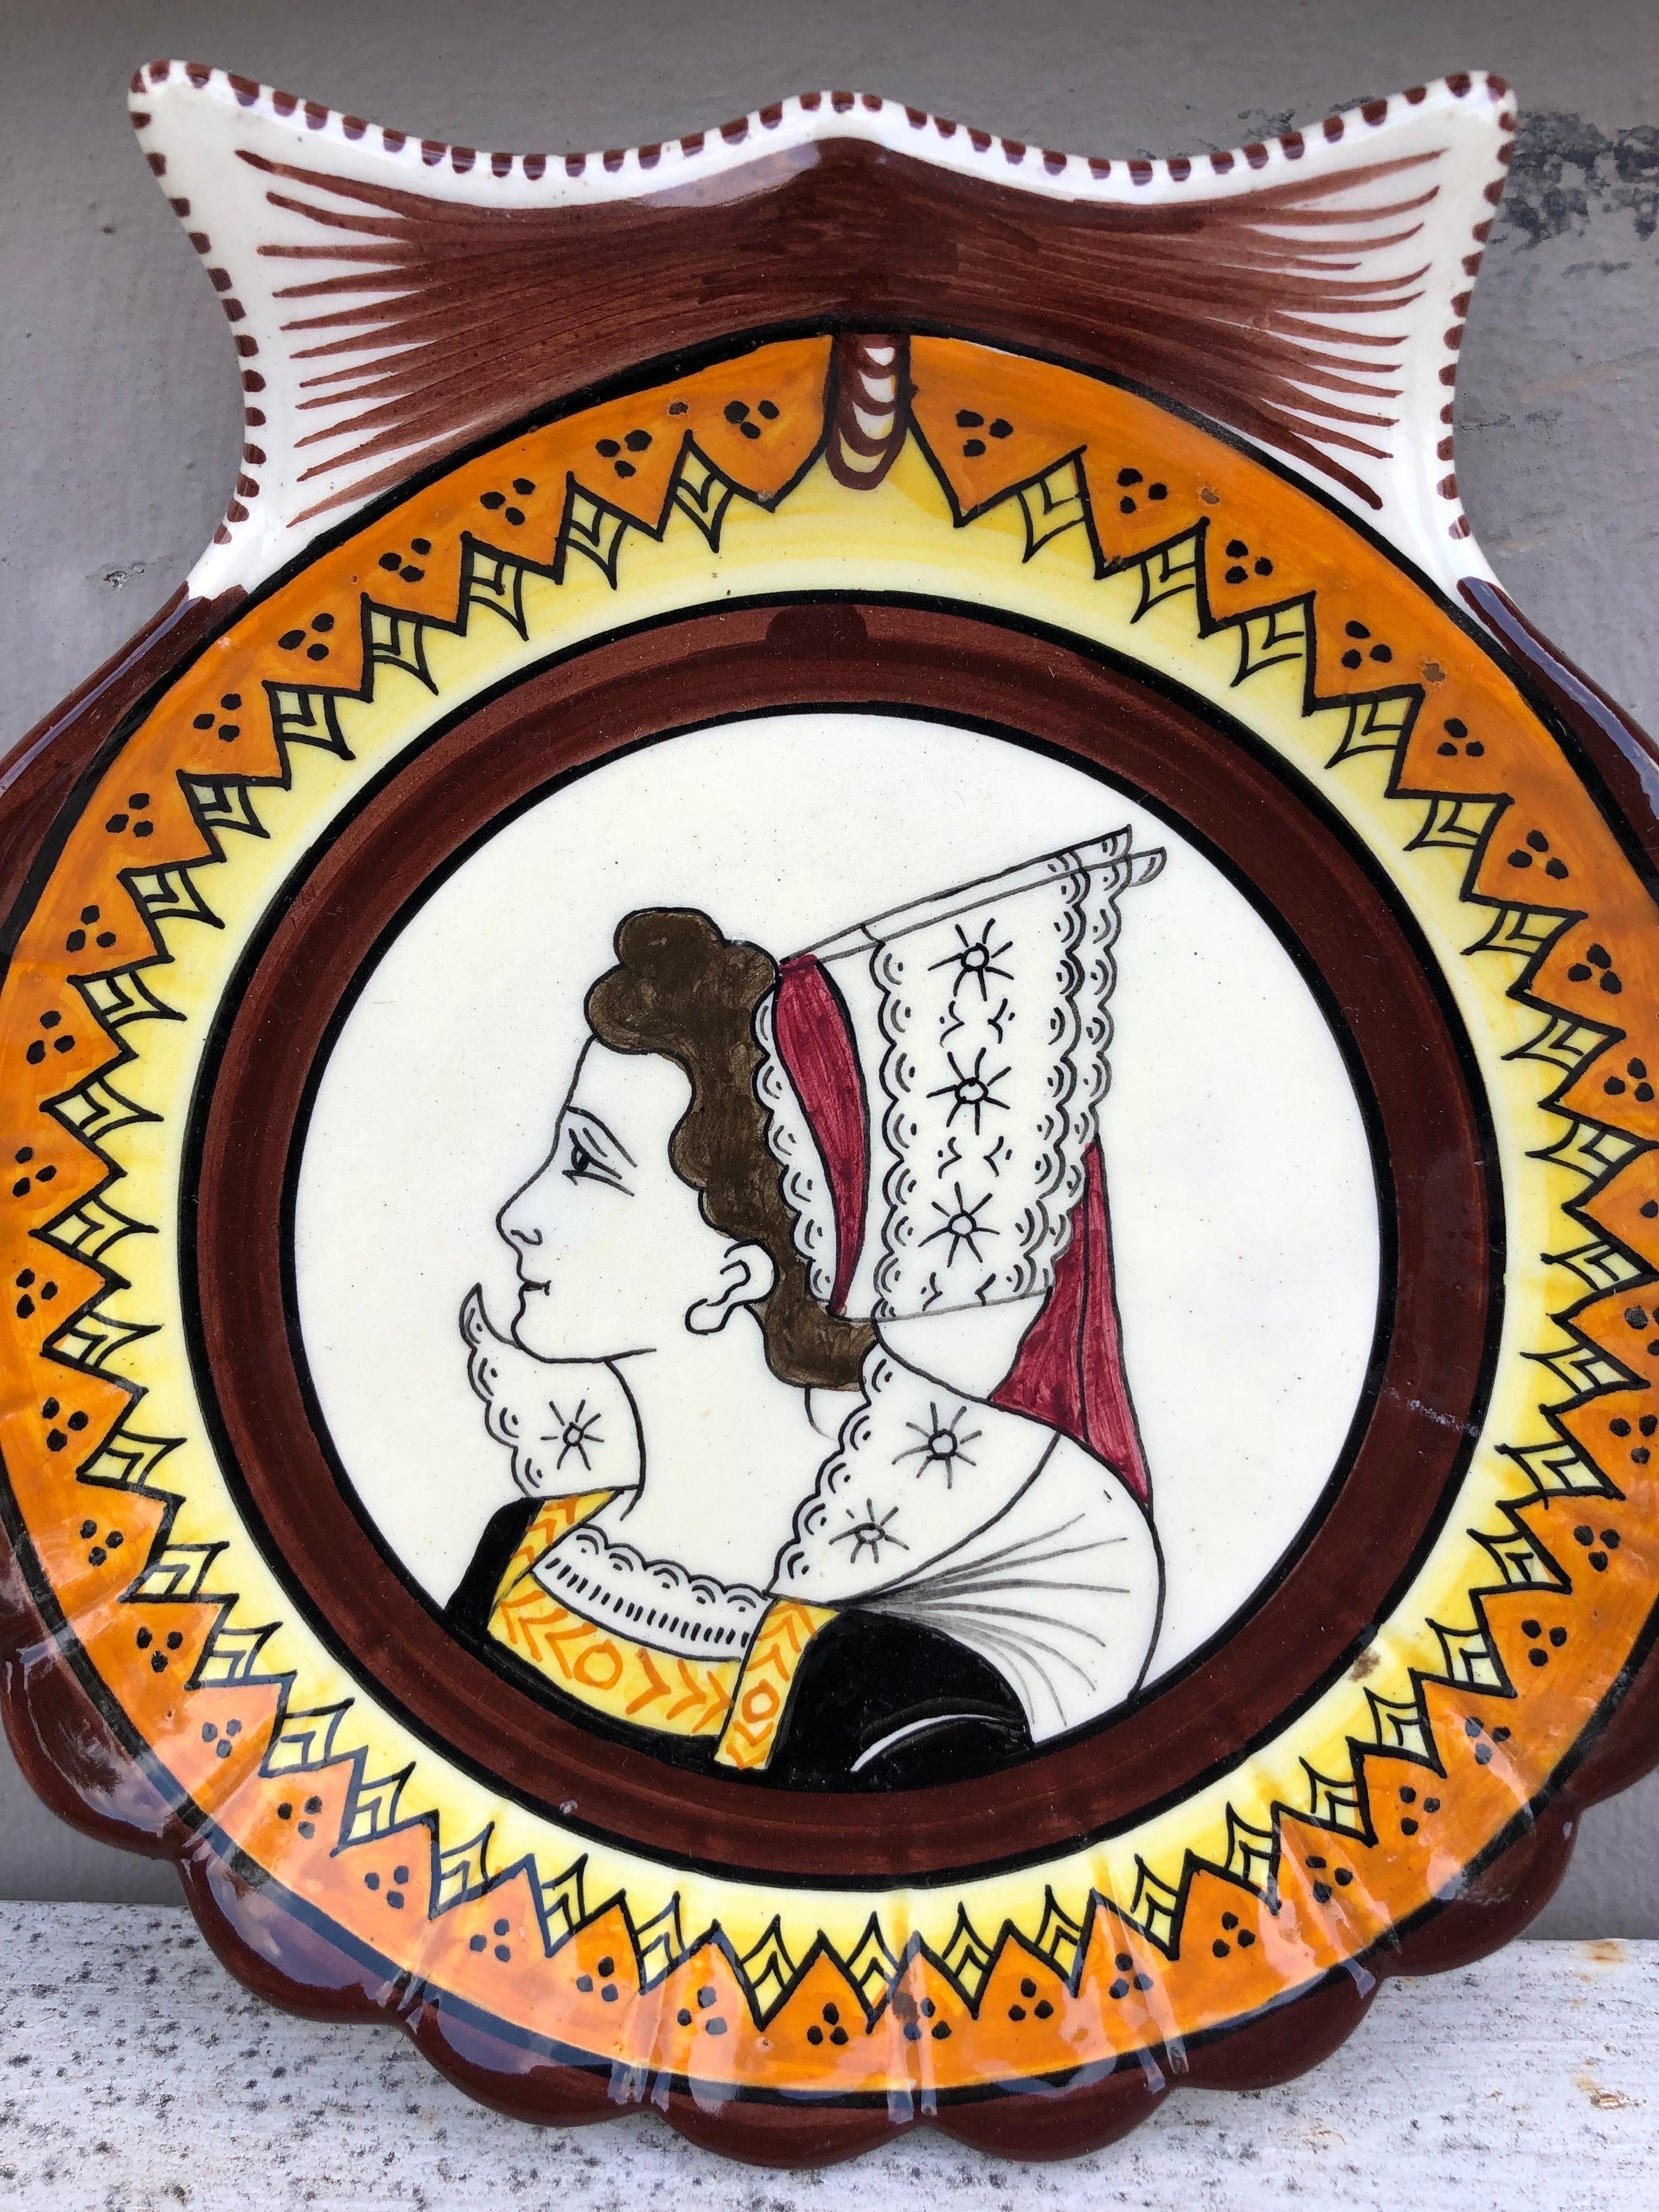 Assiette coquille en faïence française Henriot Quimper vers 1930.
Peint avec une bretonne avec son costume traditionnel.